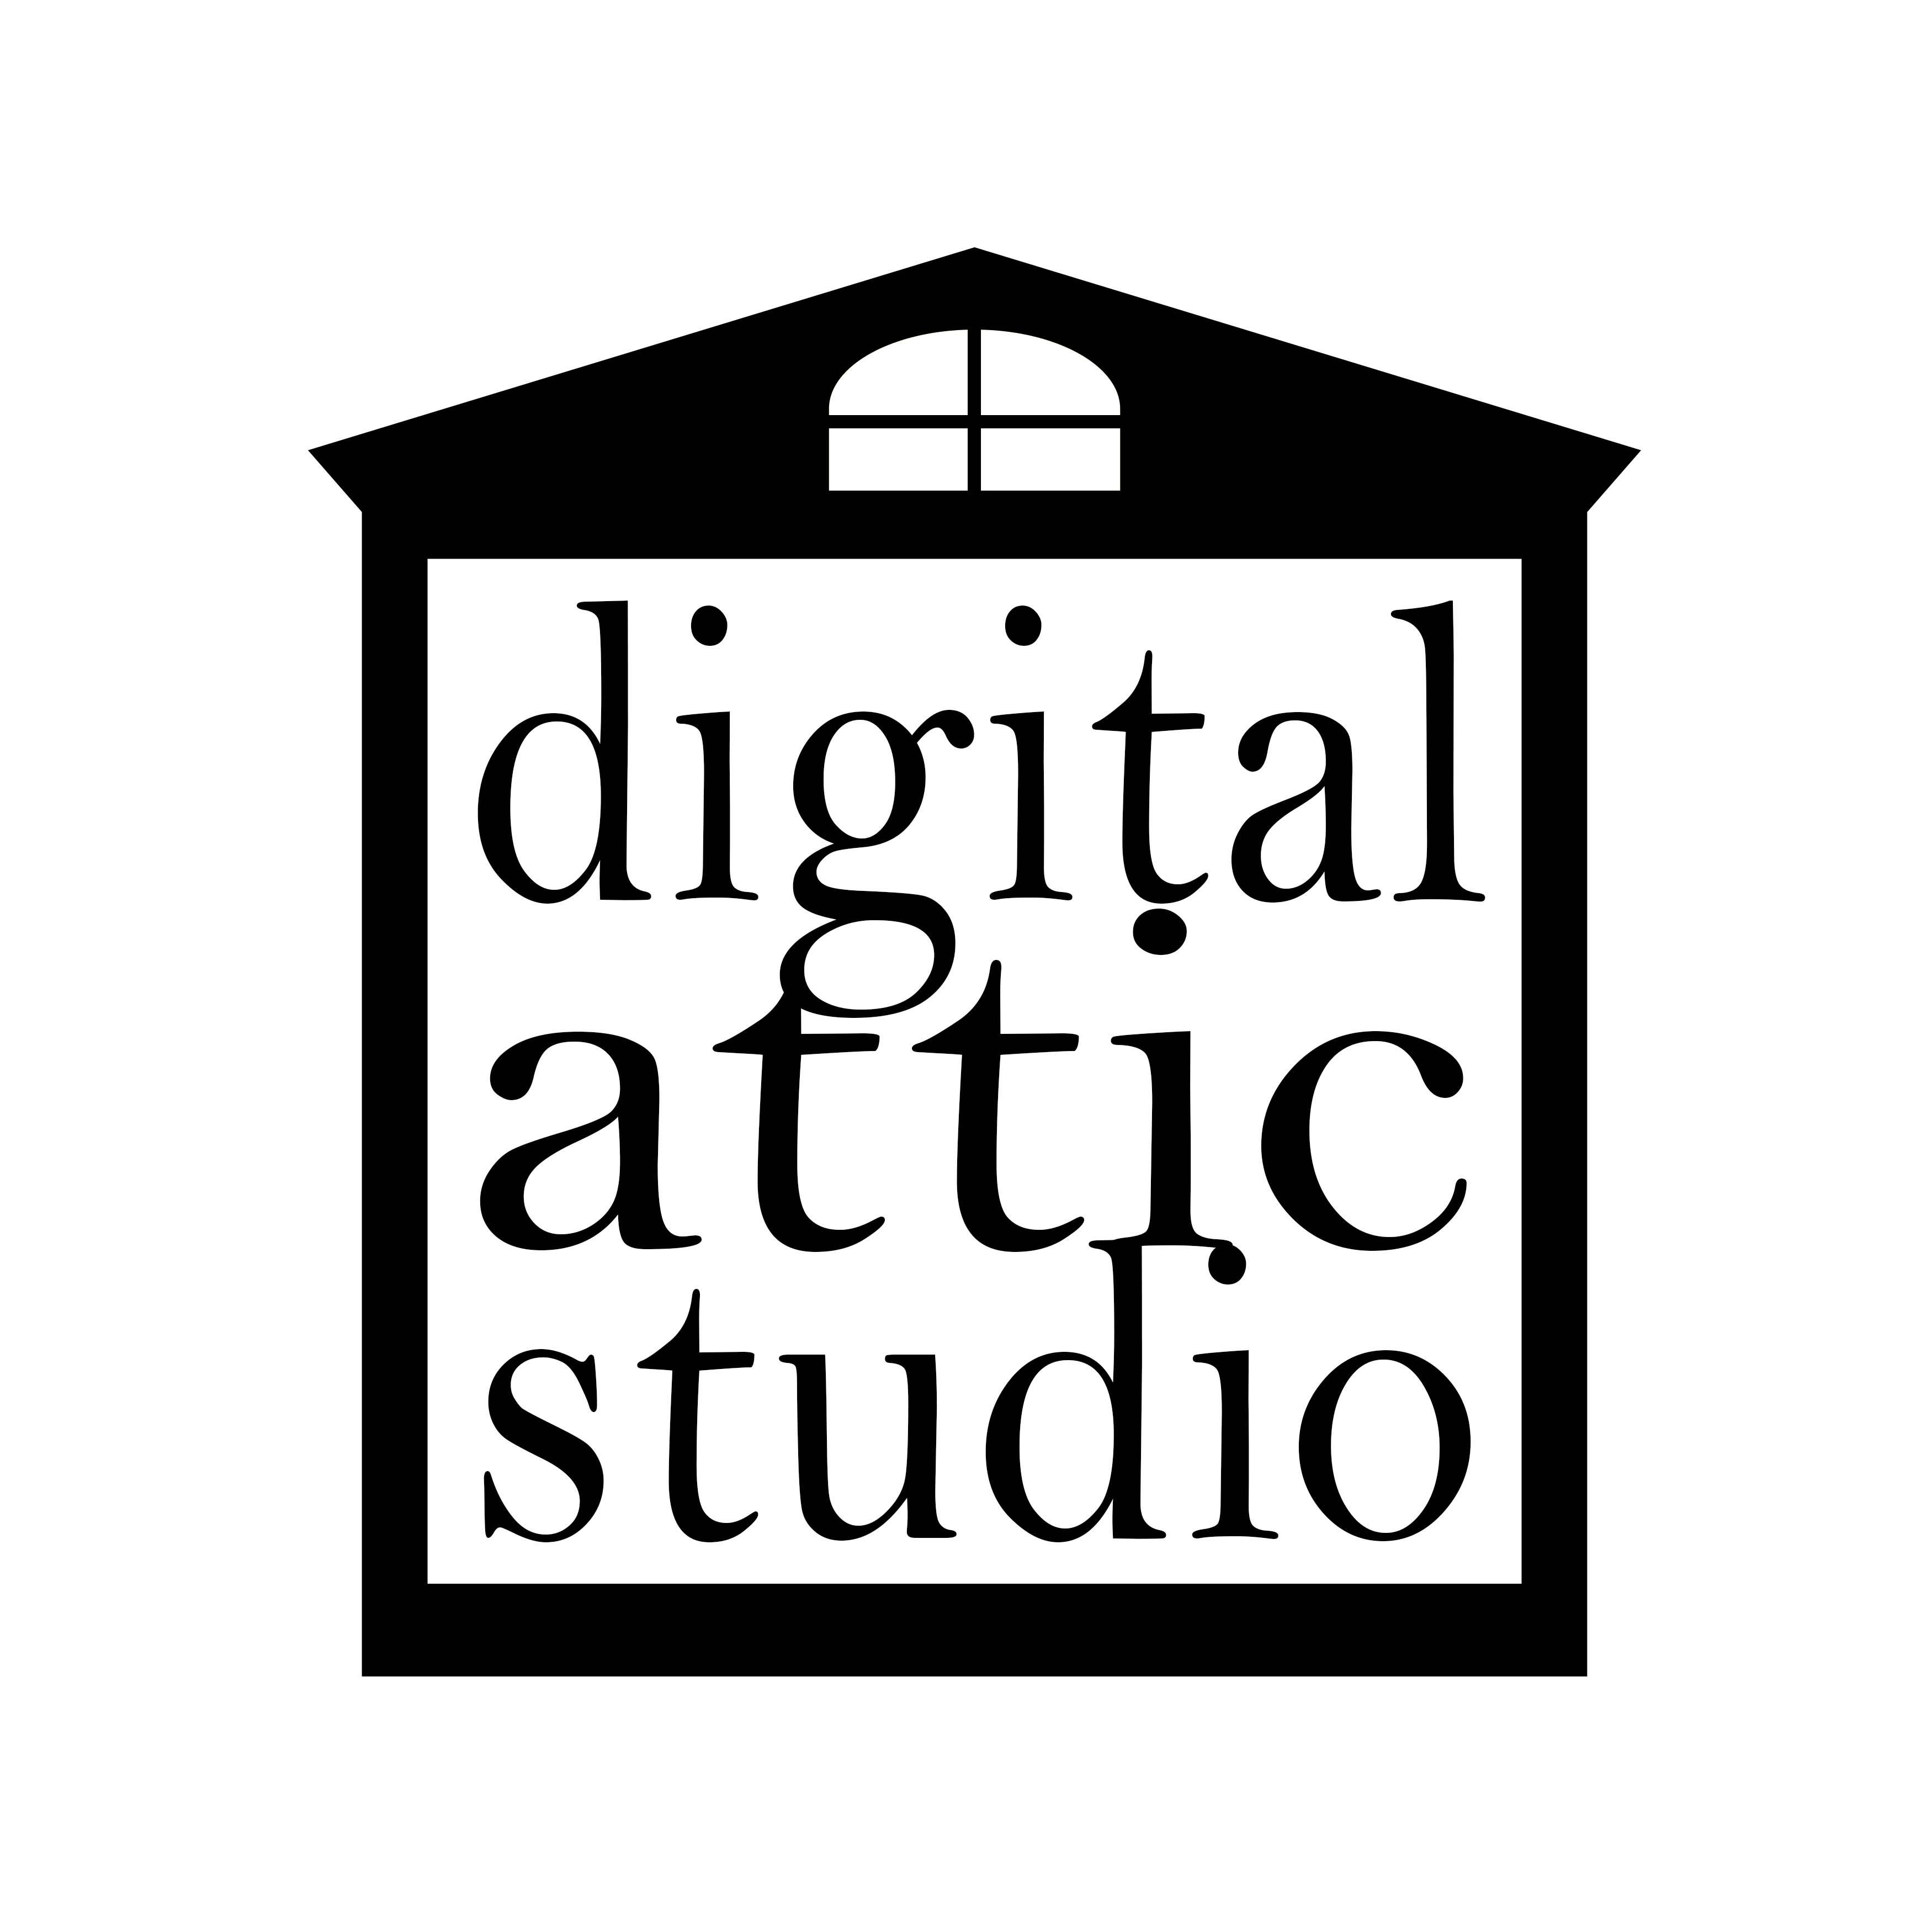 Digital Attic Studio